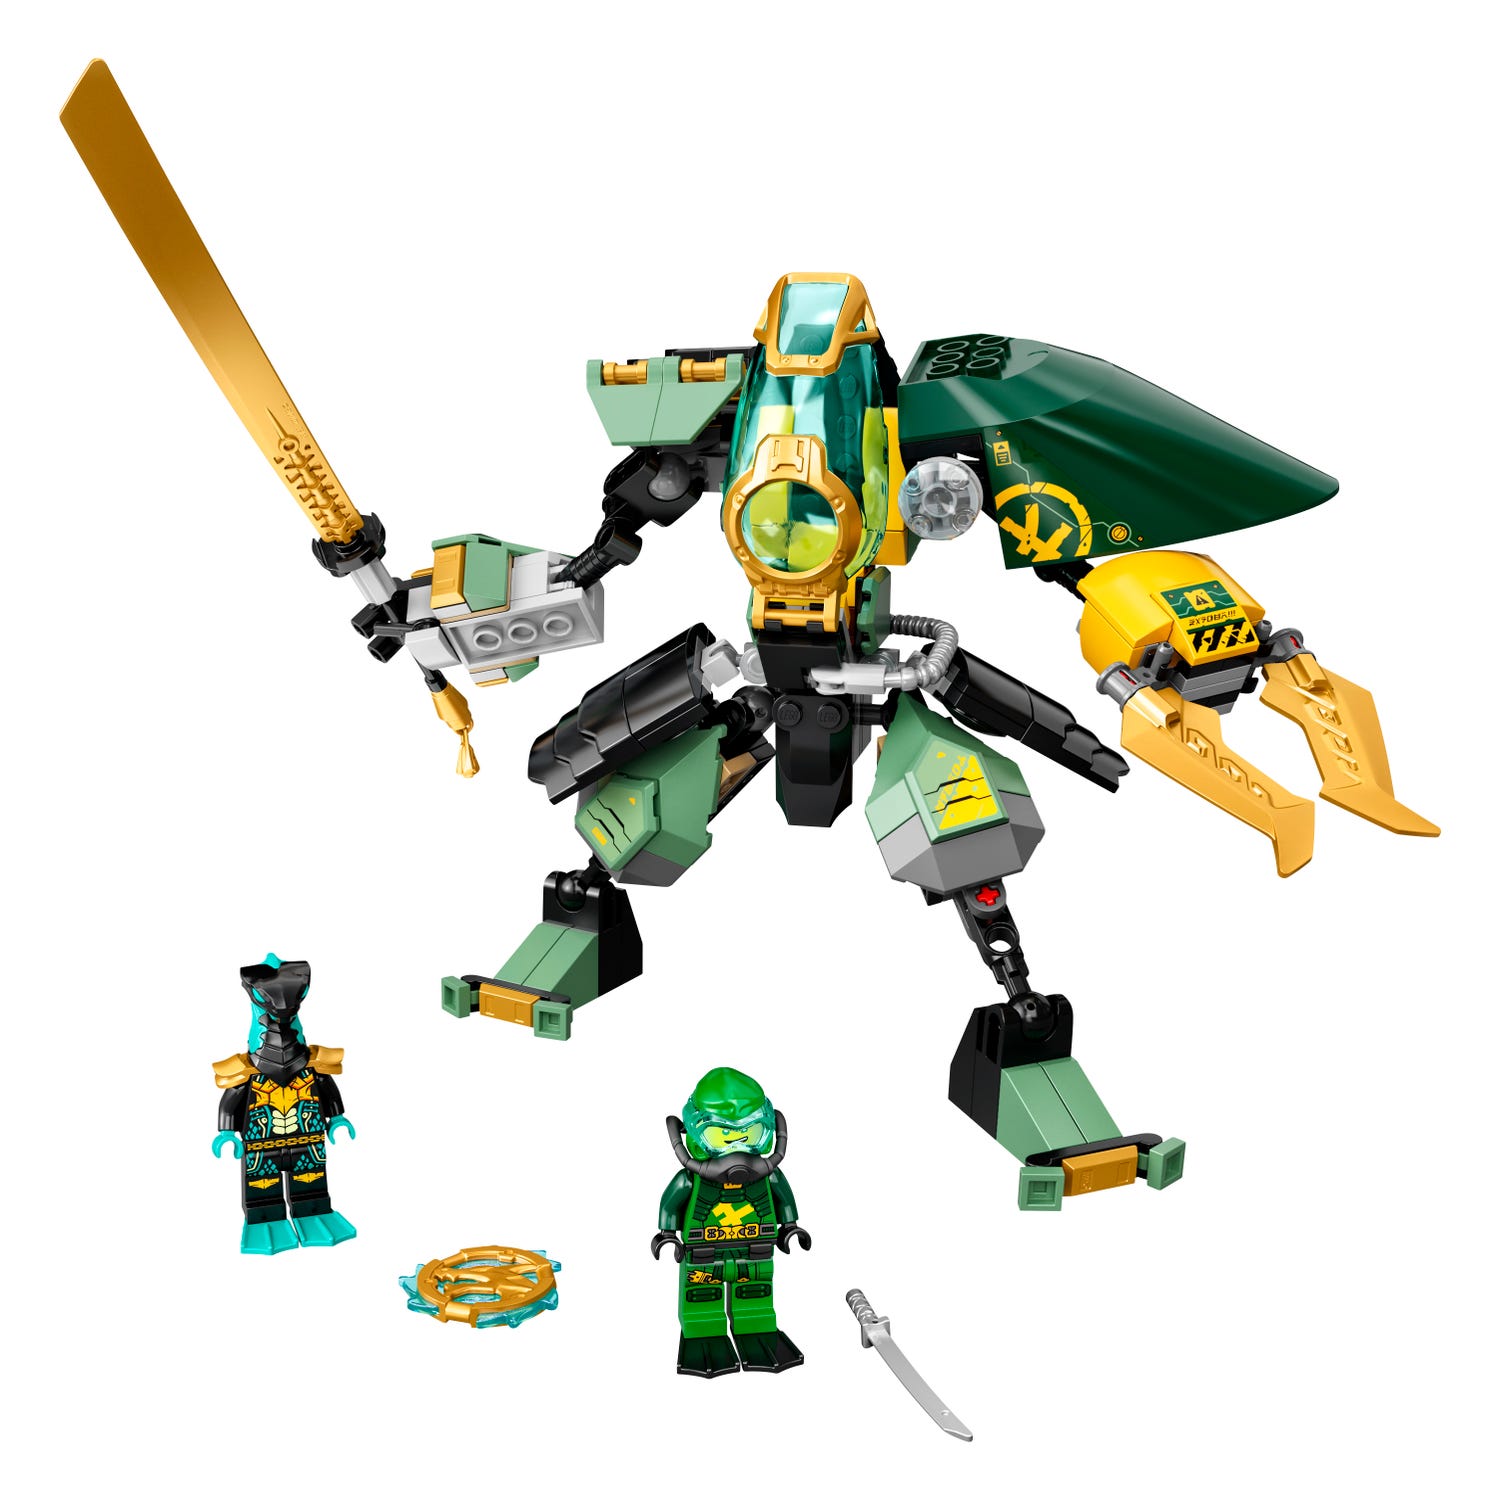 Robot Lego Ninjago | vlr.eng.br